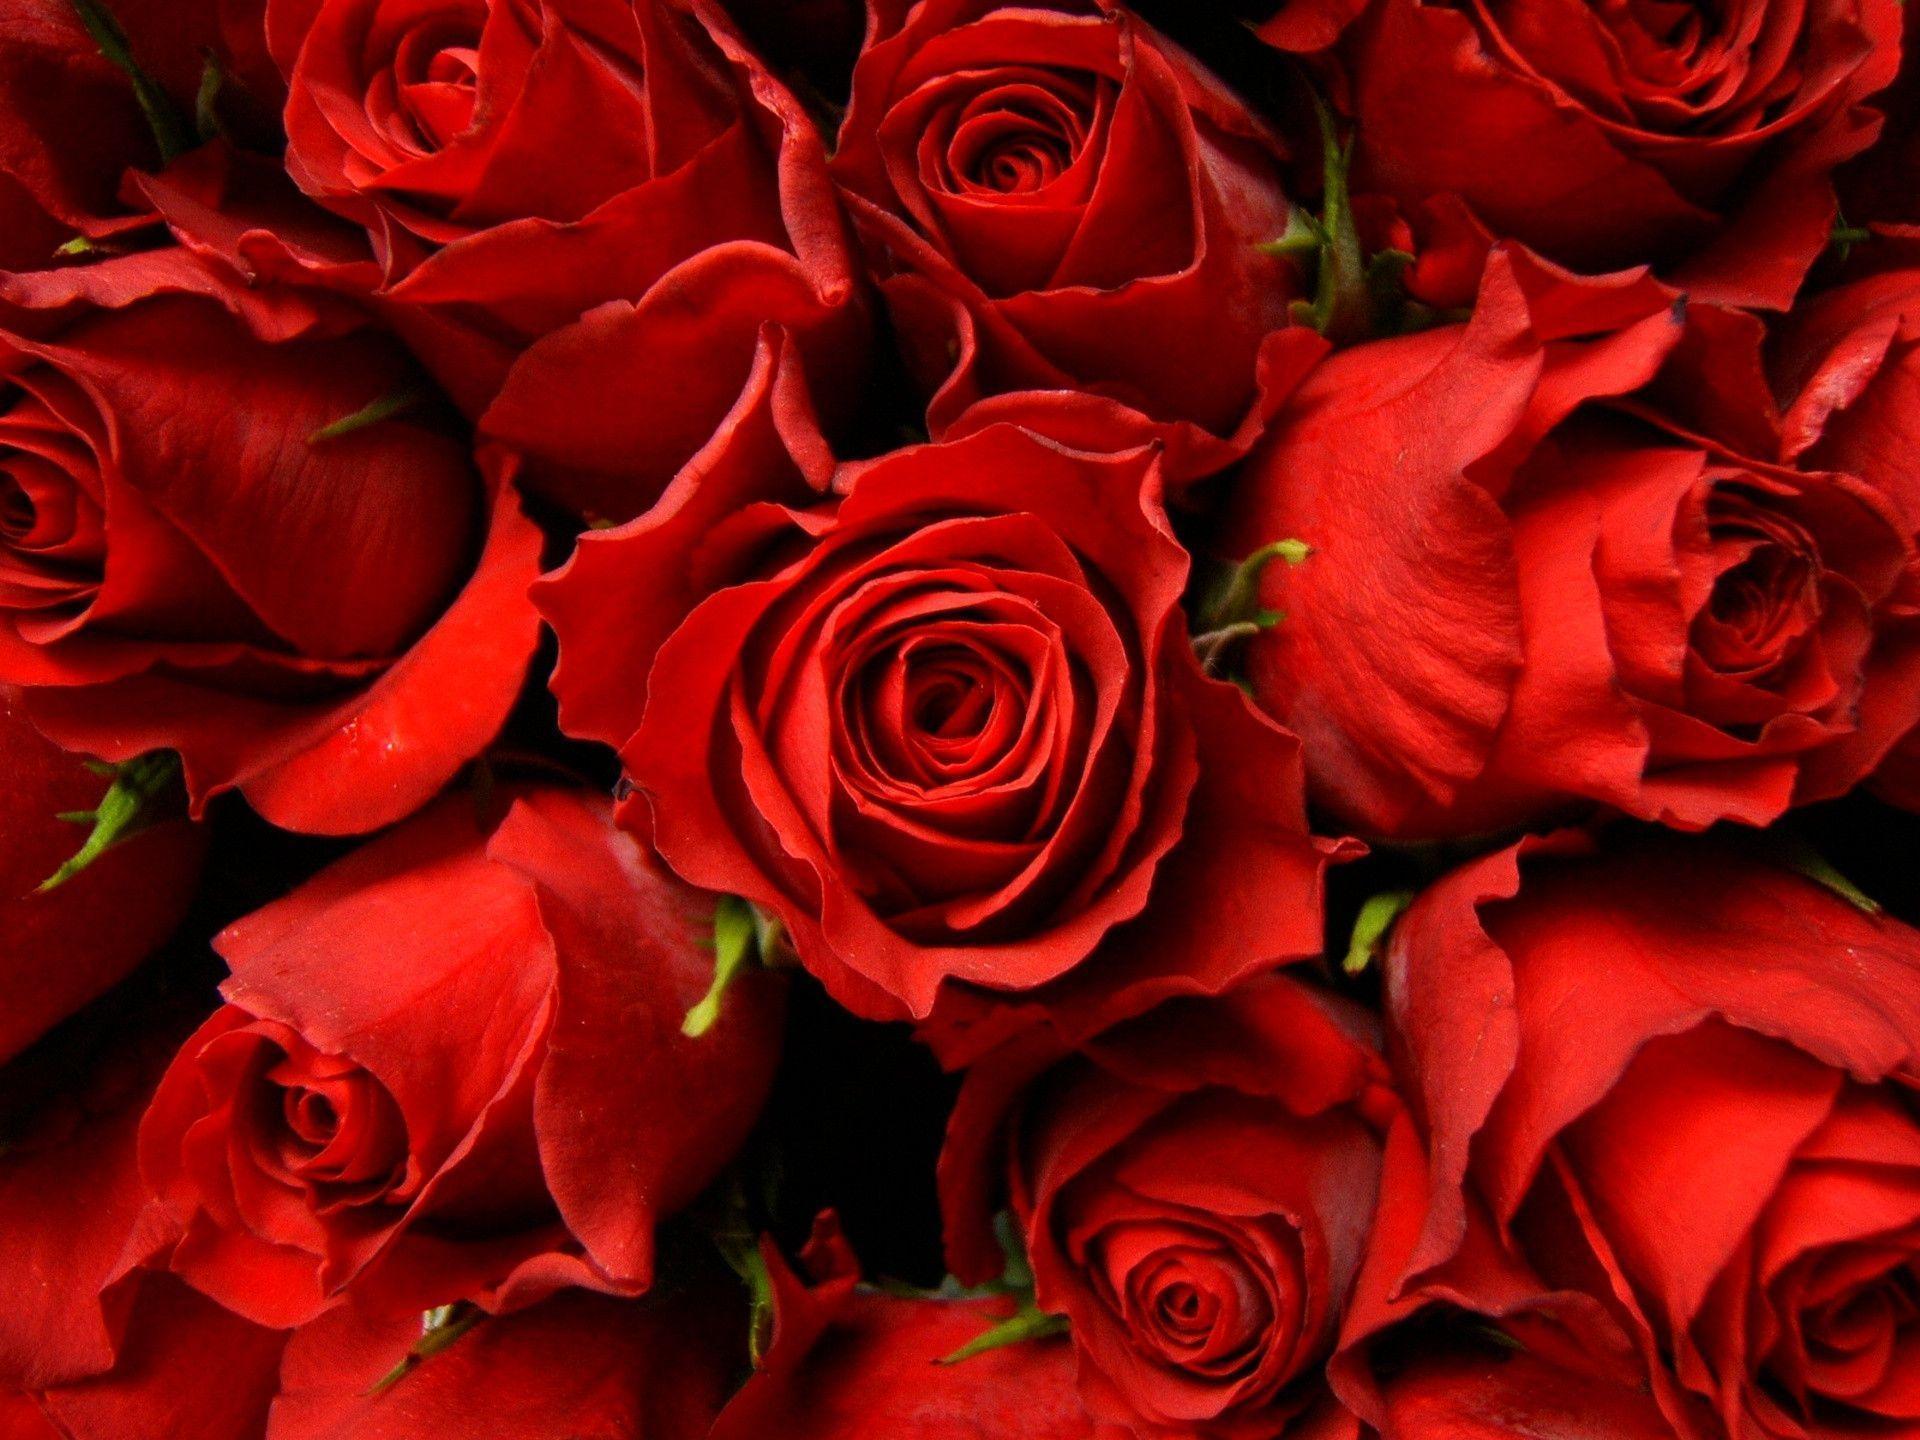 Hoa đỏ là biểu tượng của tình yêu và sự nhẹ nhàng. Hãy thưởng thức hình ảnh của những bông hoa đỏ và cảm nhận vẻ đẹp tuyệt đẹp của chúng.